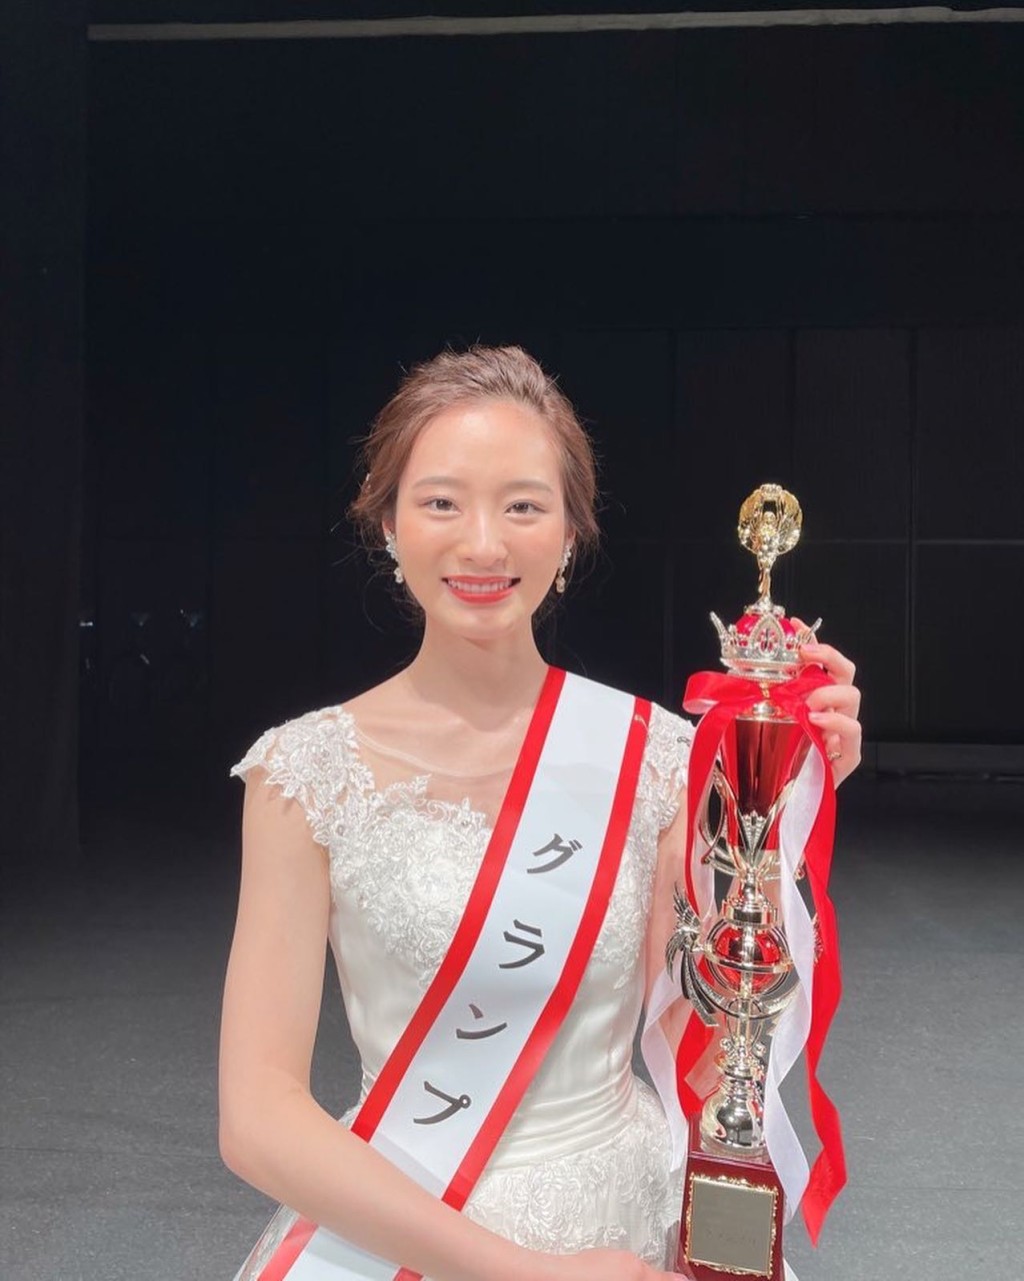 神谷明採在2021年春季獲得「Miss of Miss」日本校園美女最大賞。 IG@asa_kamiya